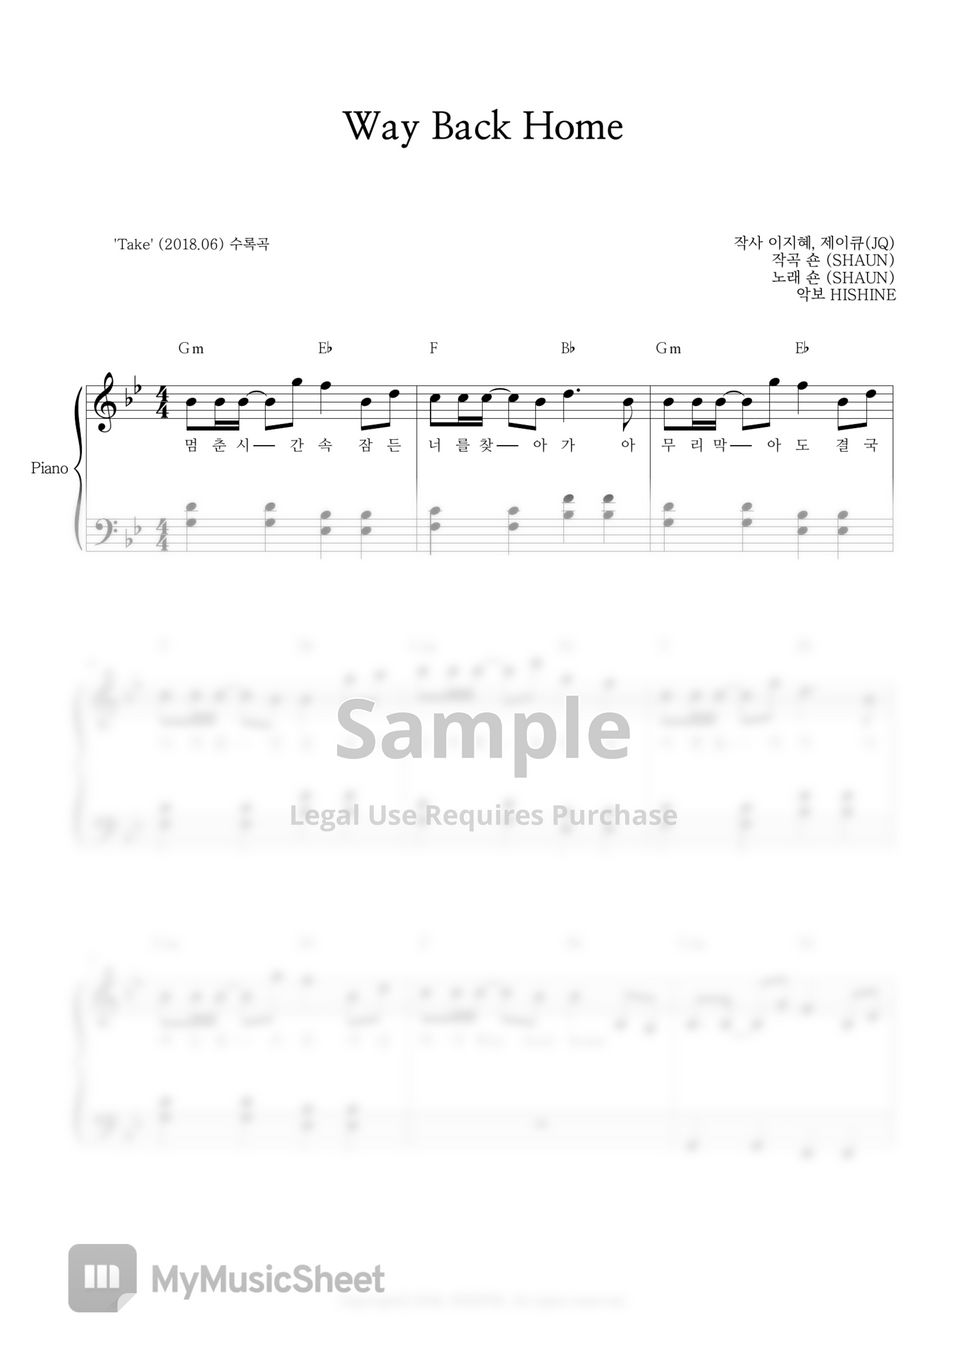 SHAUN – Way Back Home Easy Piano Sheet Music